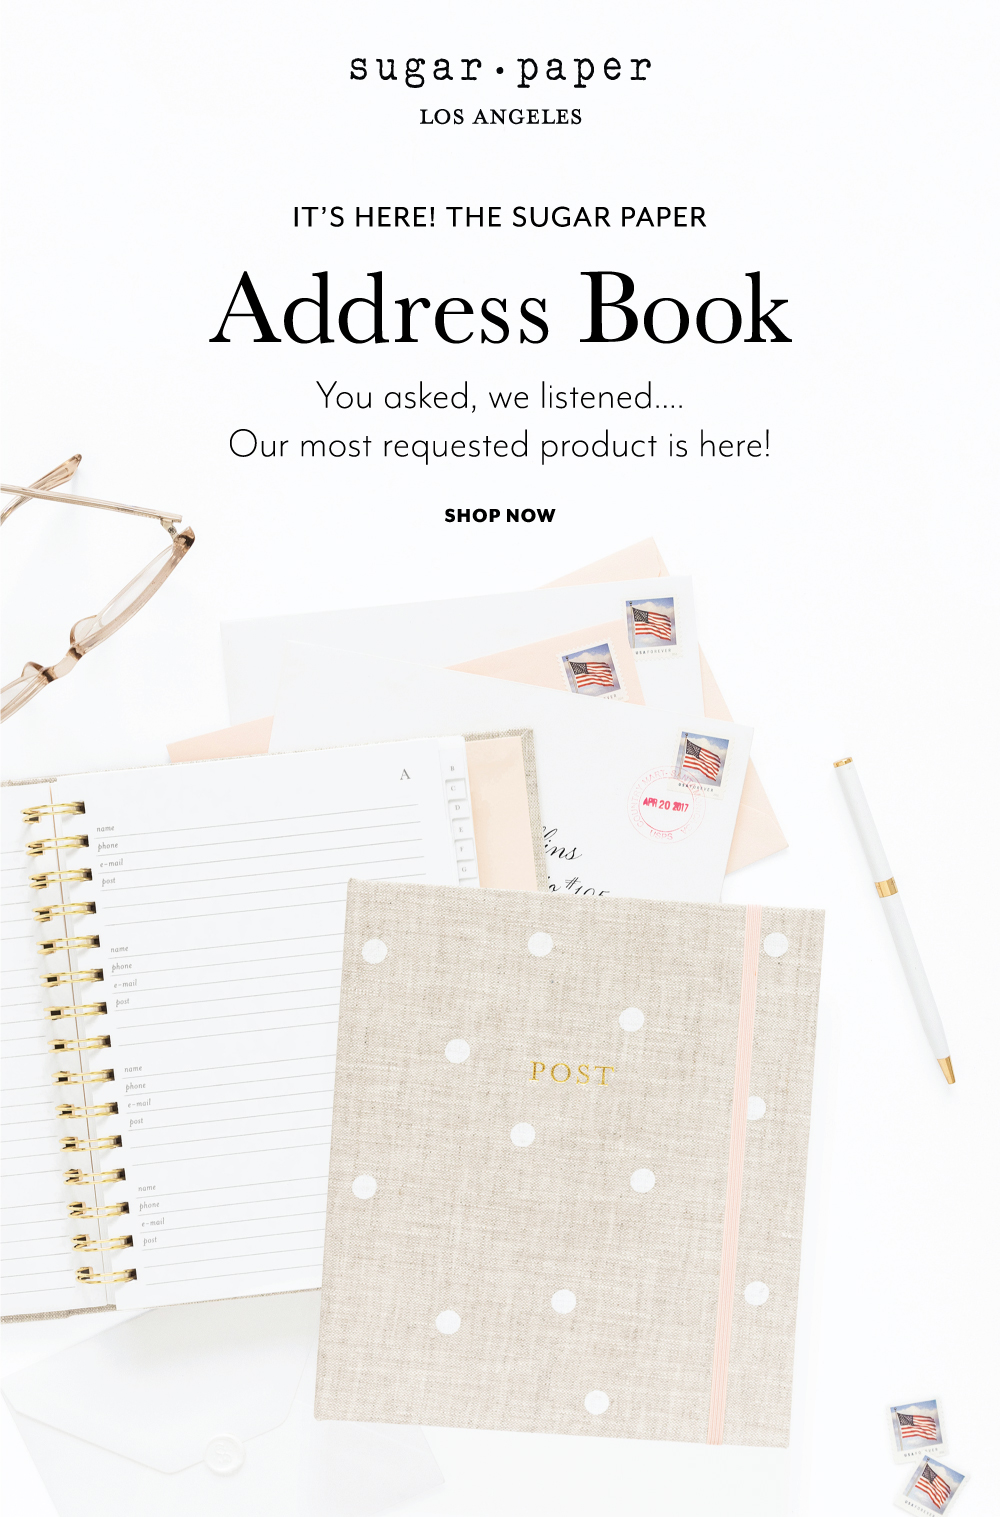 The Sugar Paper Address Book